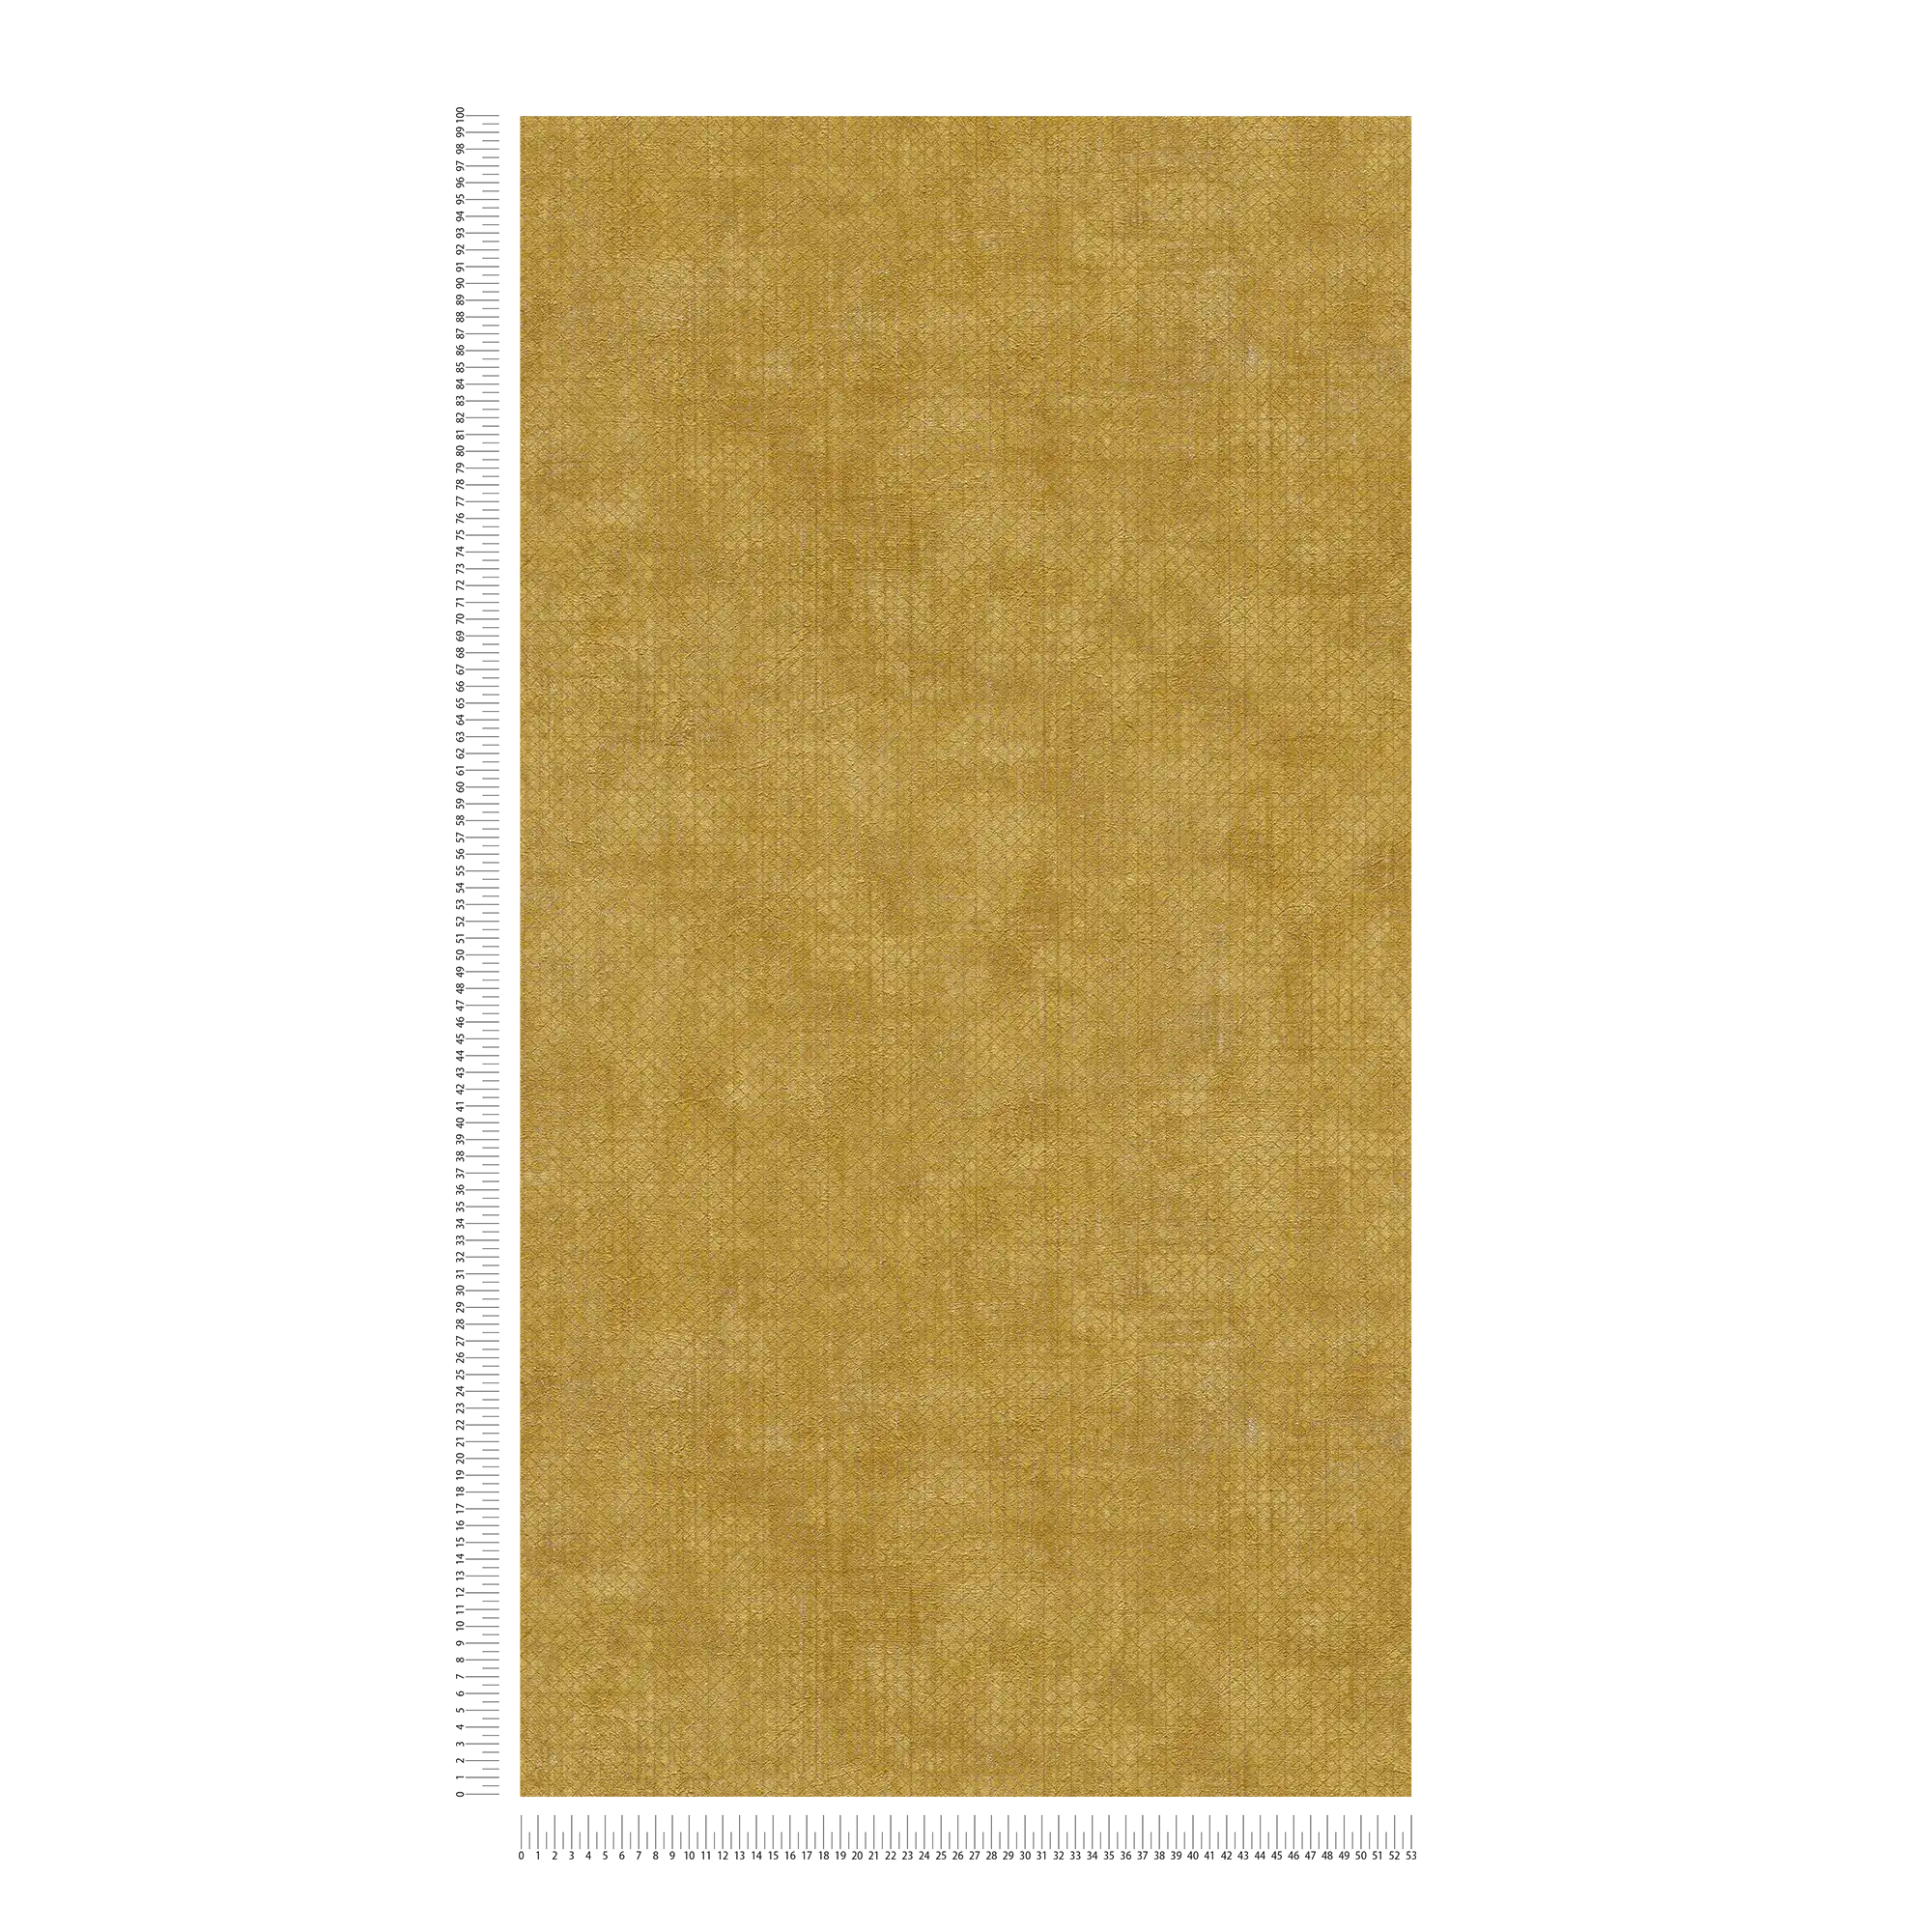             Carta da parati giallo senape con motivo a struttura metallica - giallo
        